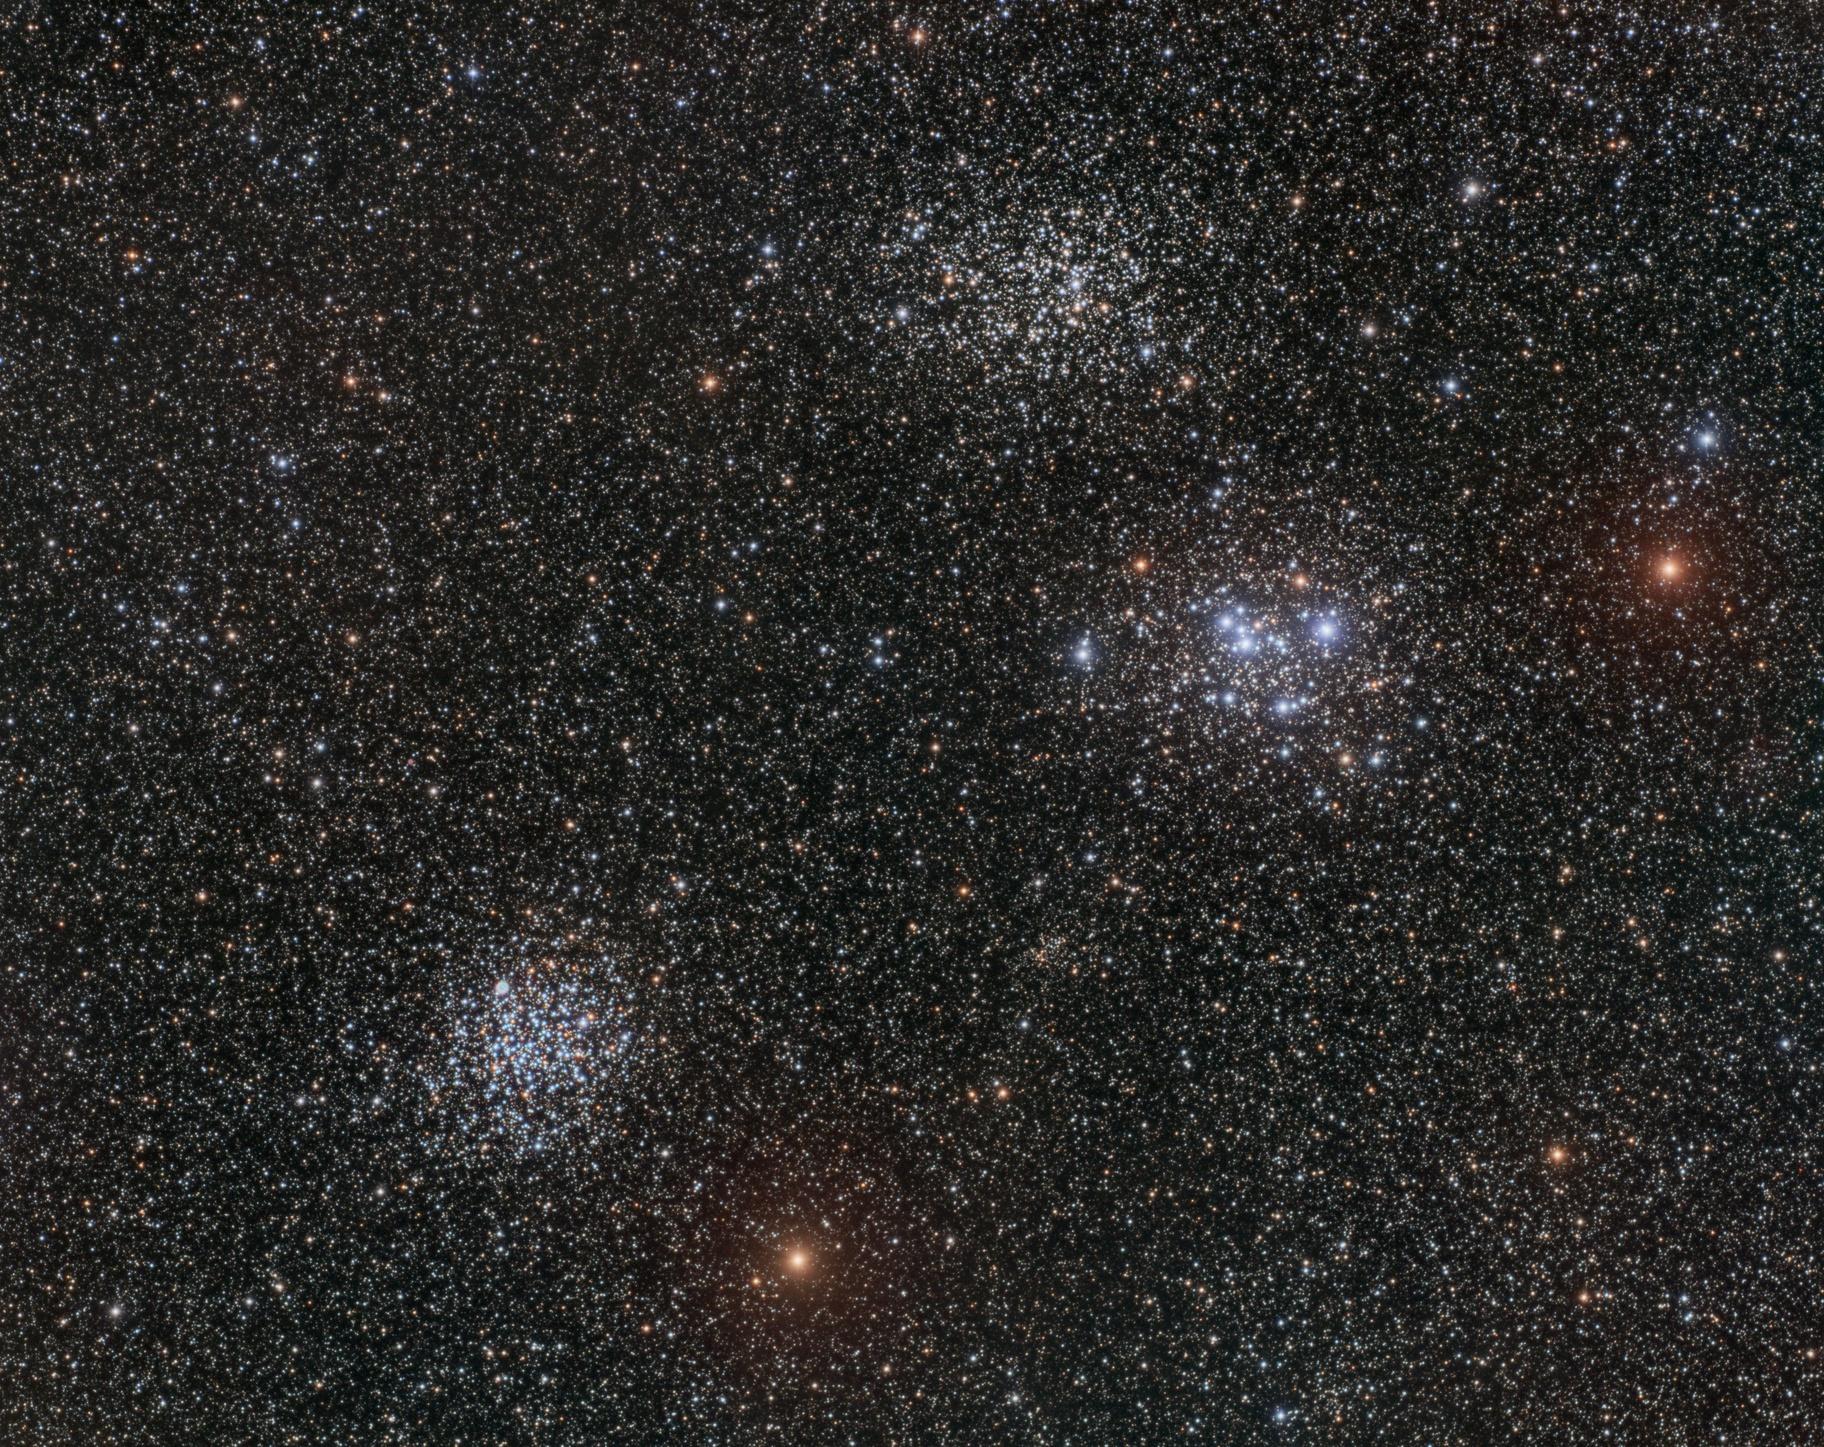 قطعة مرصّعة بالنجوم من السماء تظهر فيها ثلاثة عناقيد نجميّة متفاوتة